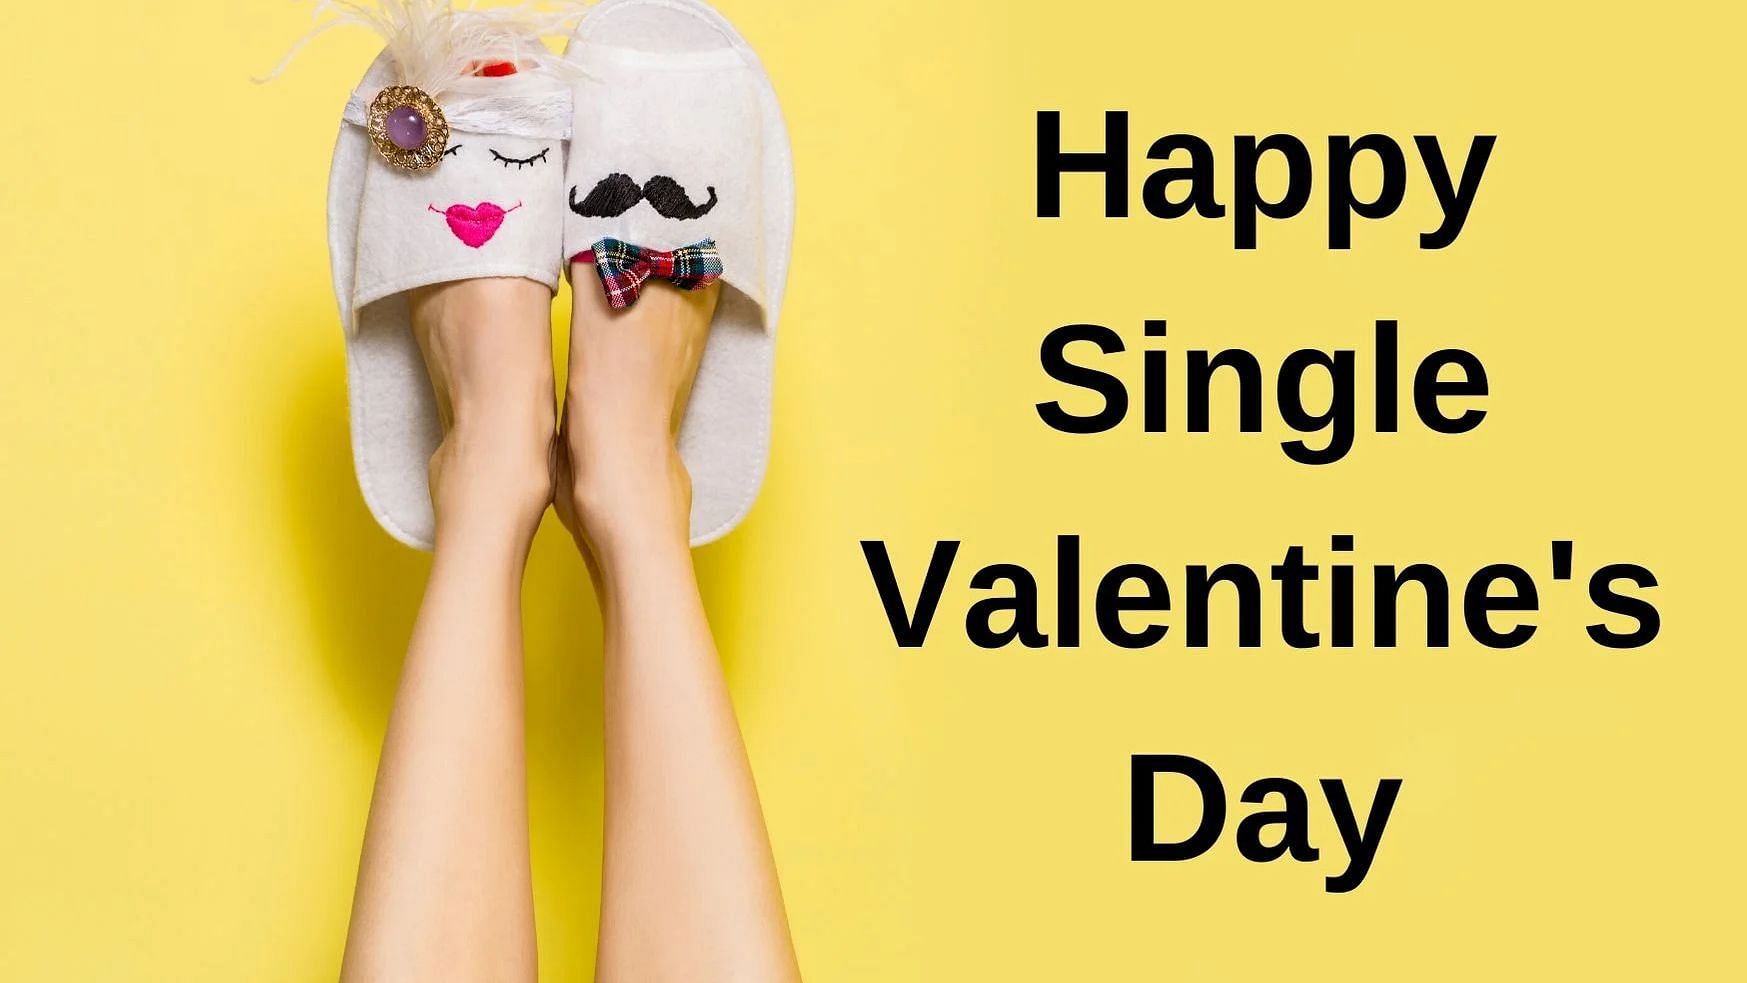 Happy Single Valentine Day 2020 Images with Quotes for Singles. सिंगल्स अपने दोस्तों को इन मैसेजेज से दें बधाई.